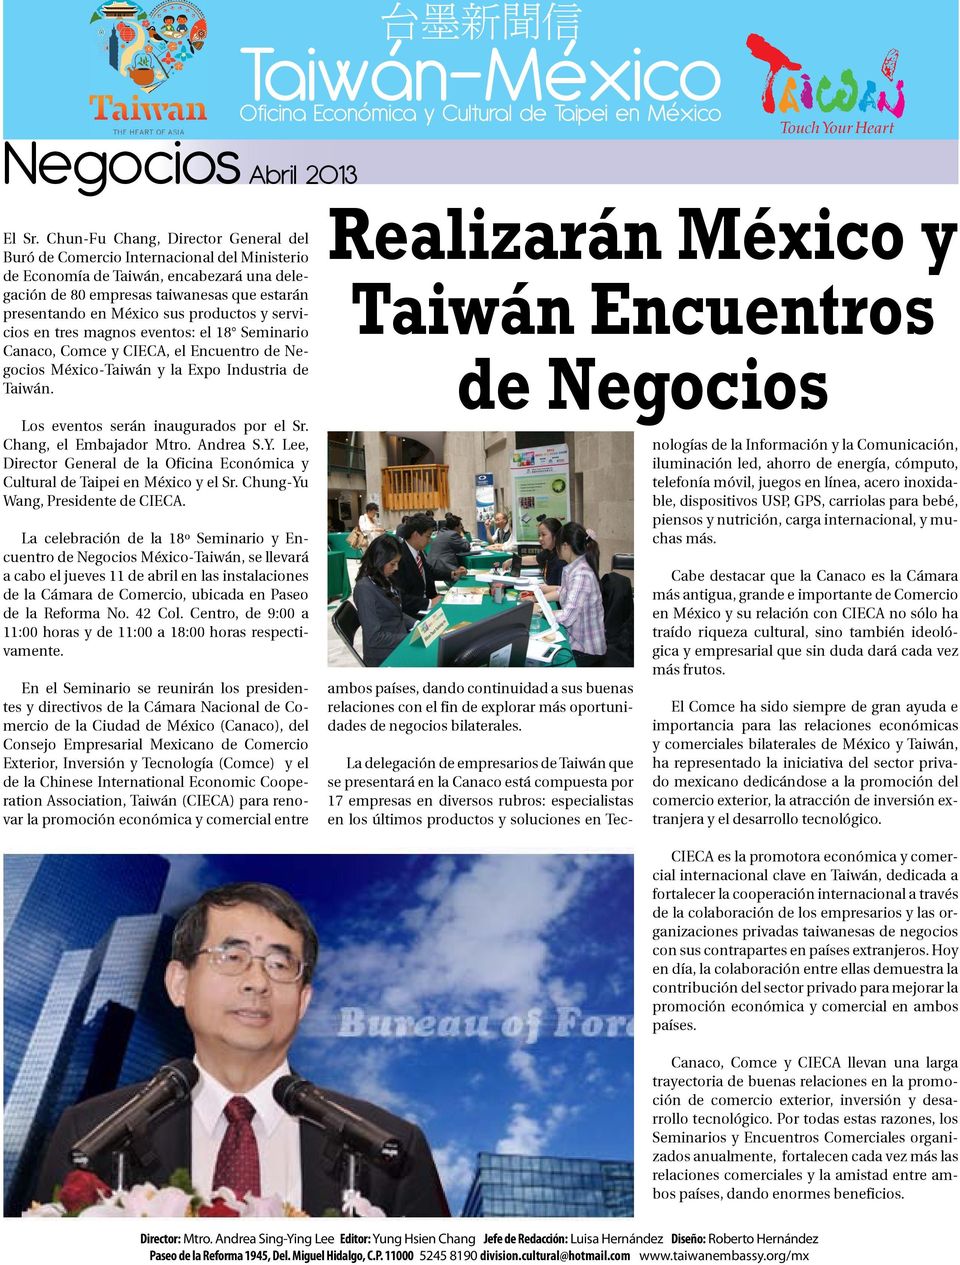 productos y servicios en tres magnos eventos: el 18 Seminario Canaco, Comce y CIECA, el Encuentro de Negocios México-Taiwán y la Expo Industria de Taiwán. Los eventos serán inaugurados por el Sr.